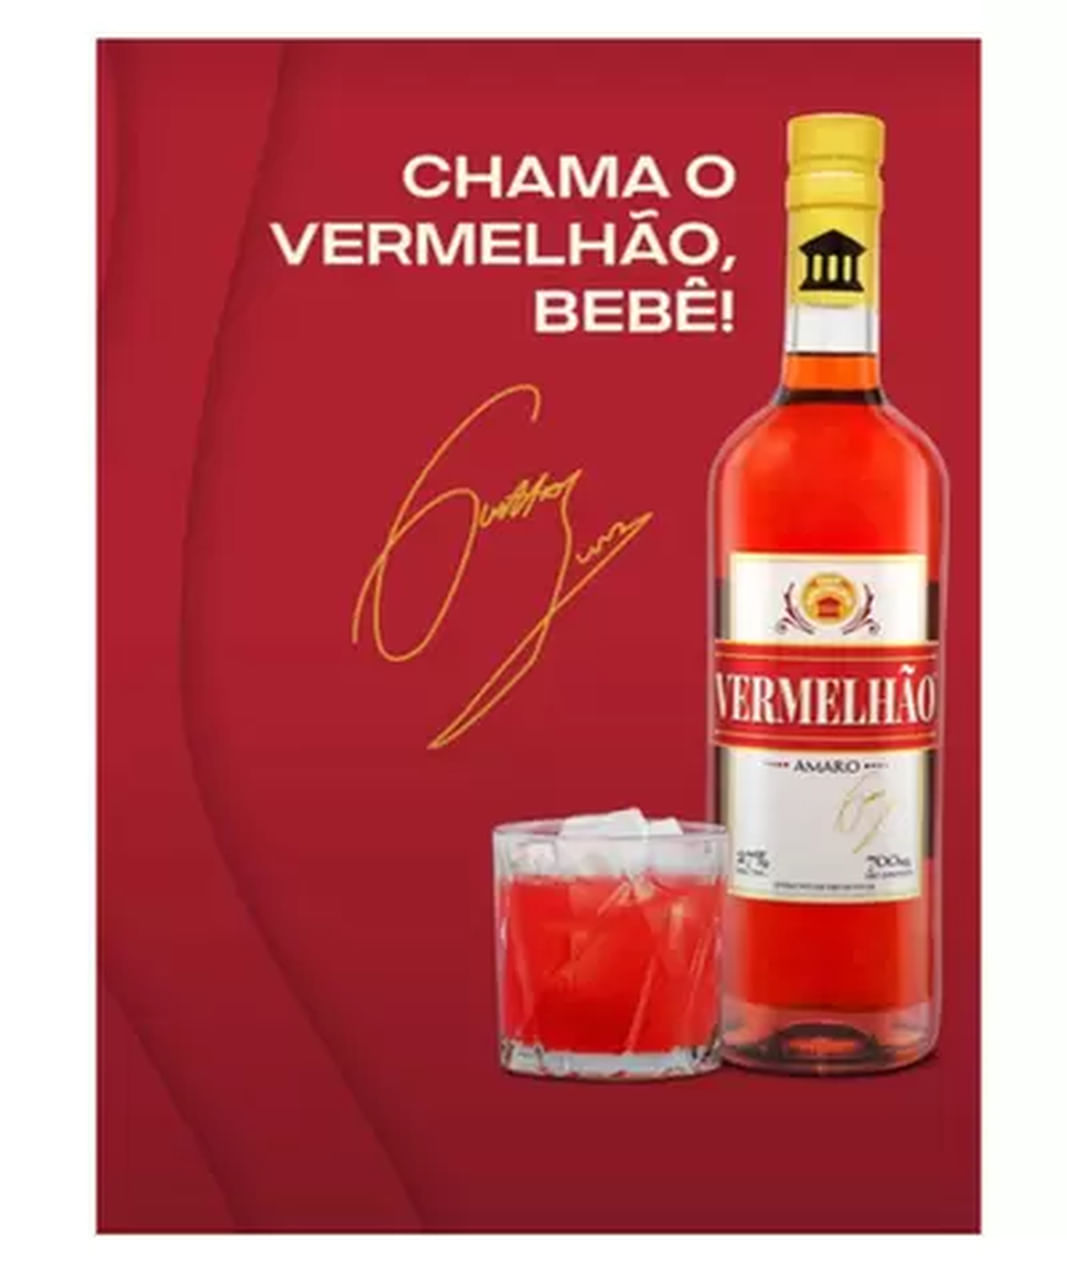 aperitivo-vermelhao-740ml - Bebidas Famosas - Whisky - Vinho - Espumantes - Bebidas Online - Preço - Comprar